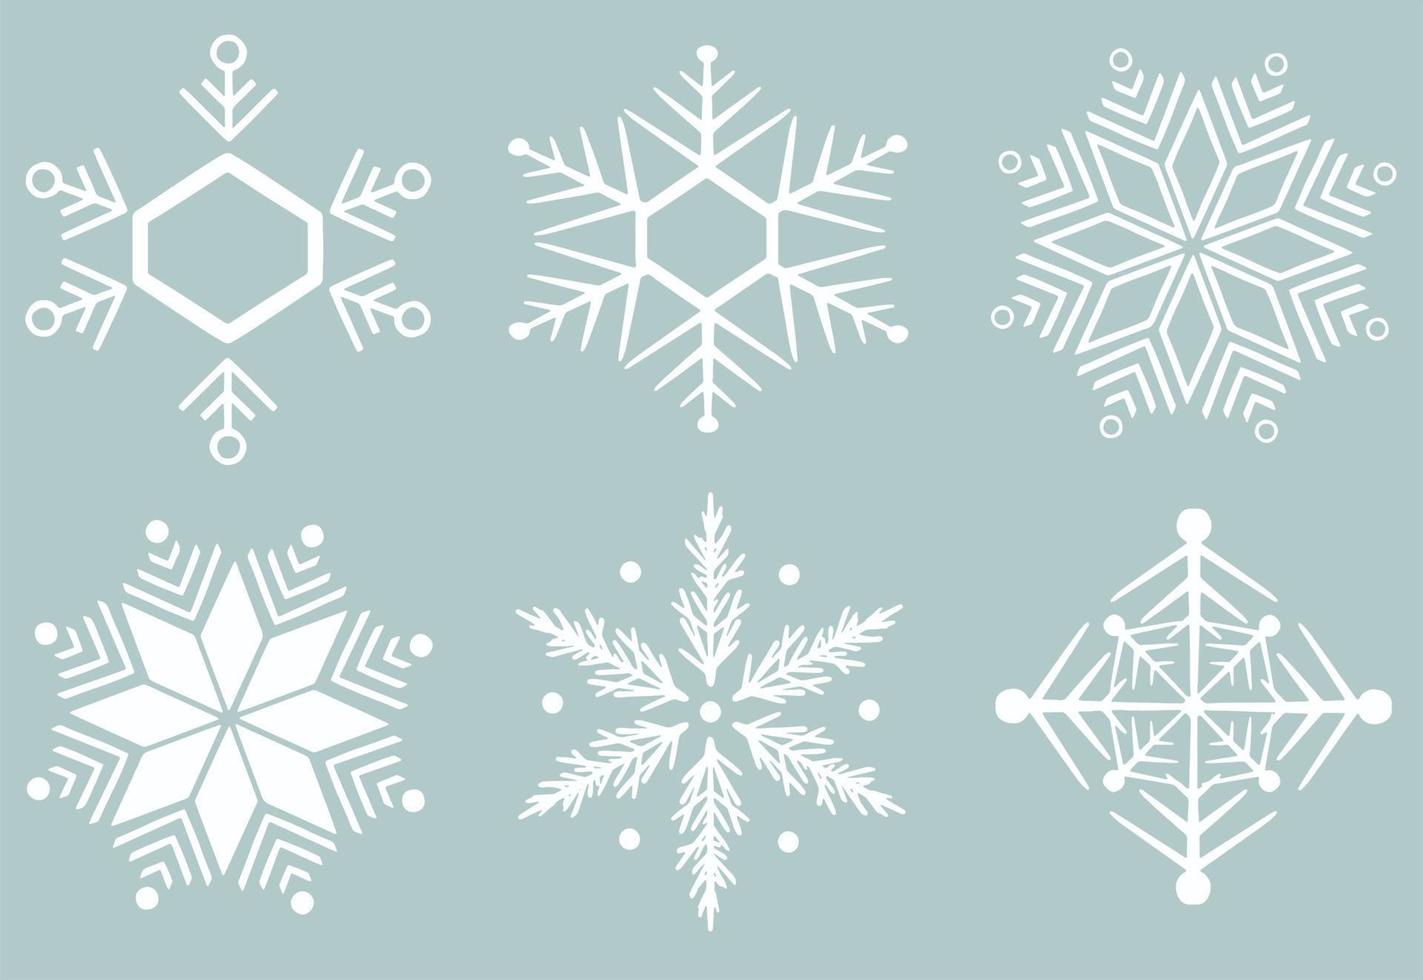 abstrakte tapete, verpackungsdekoration. symbol des winters, frohe weihnachten, frohes neues jahr feier illustration. vektor